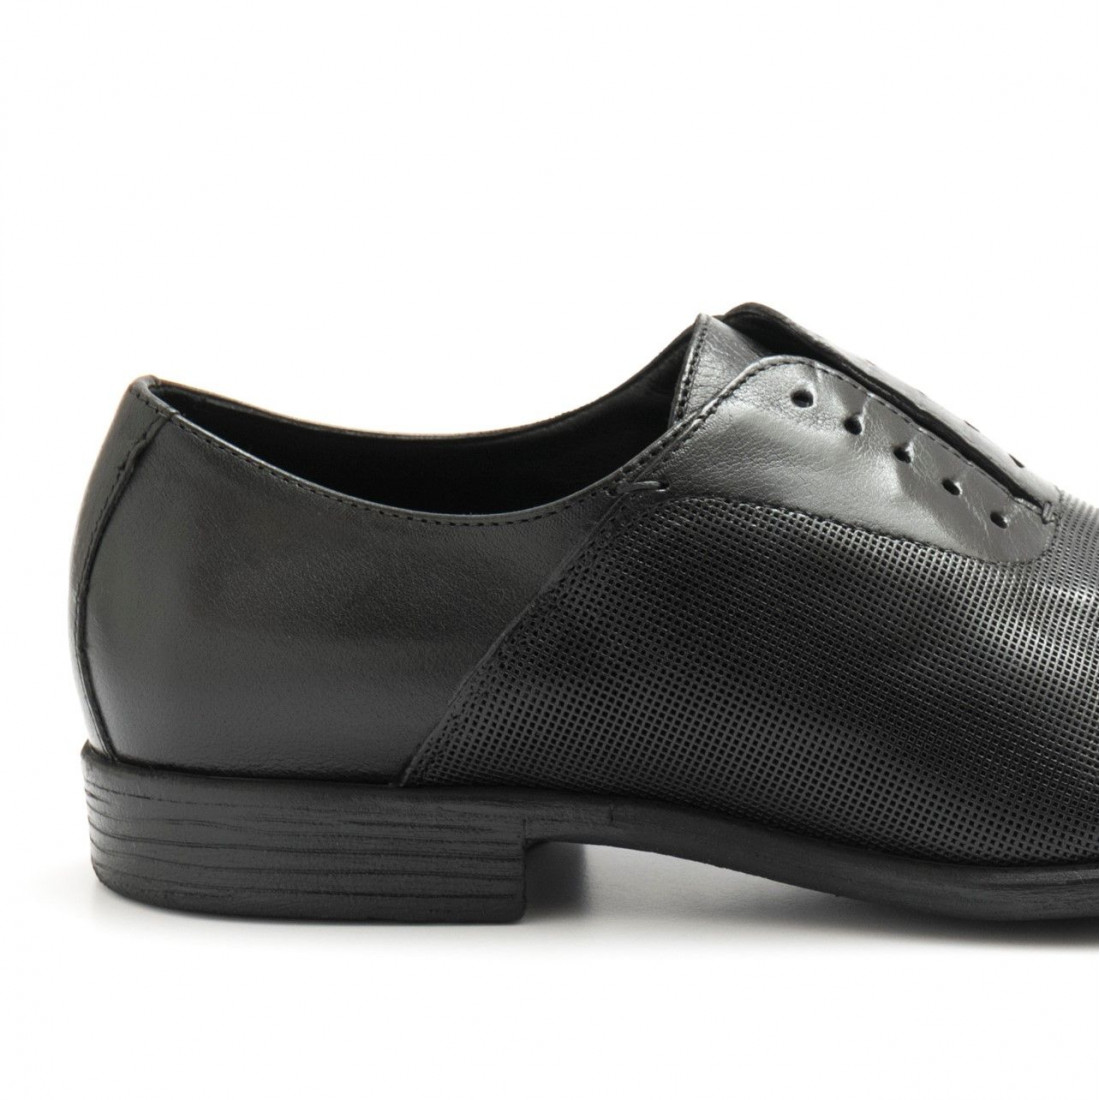 Schwarzes perforiertes Leder Hundert 100 Oxford-Schuhe